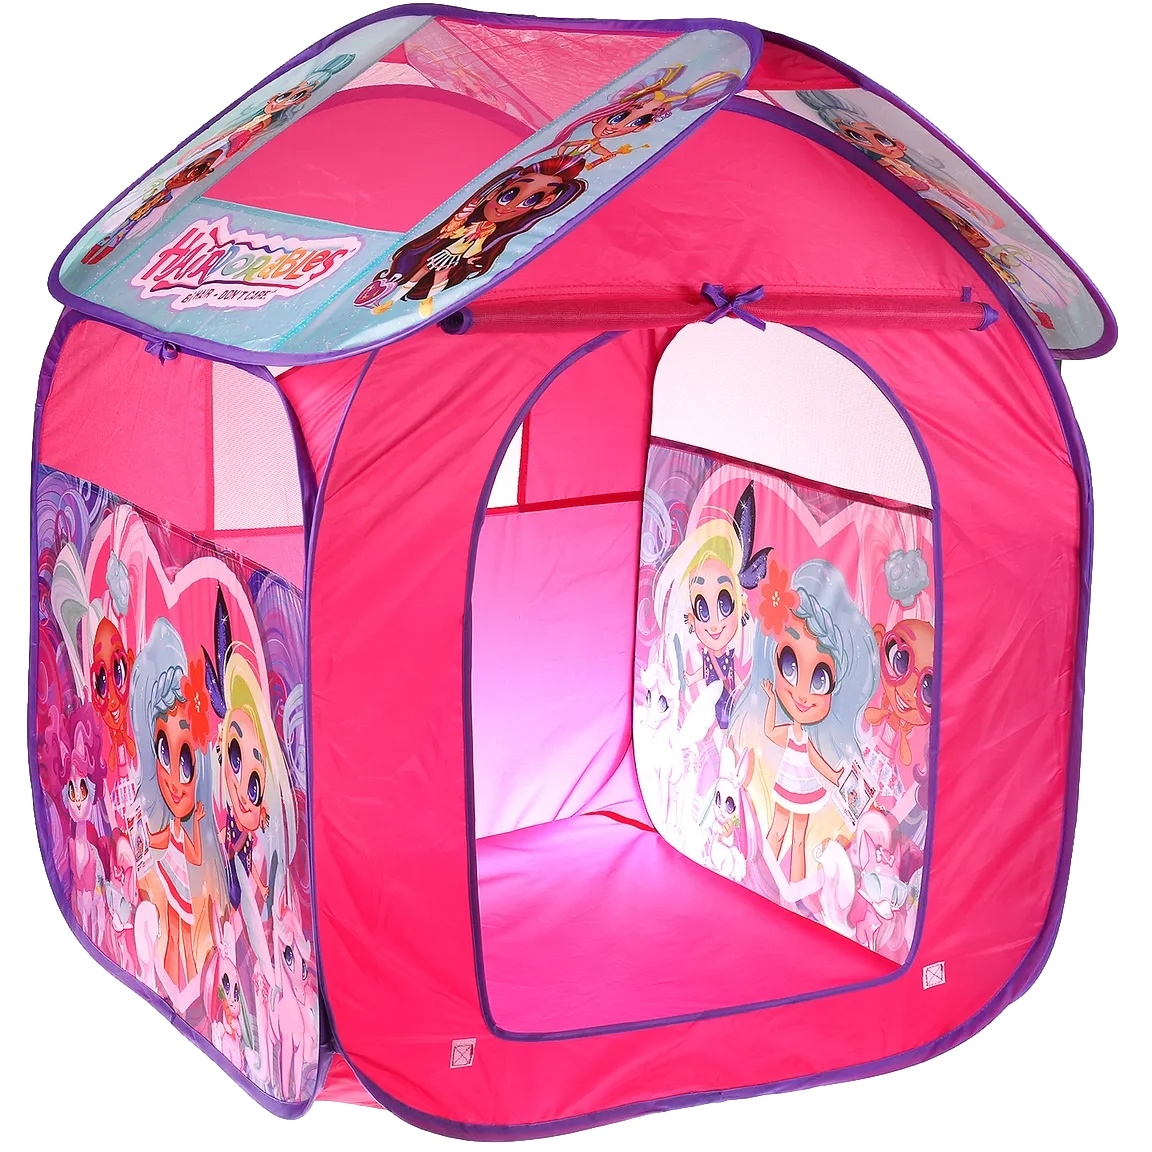 Палатка детская игровая Hairdorable 83х80х105см, в сумке Играем вместе в кор.24шт GFАНDRR